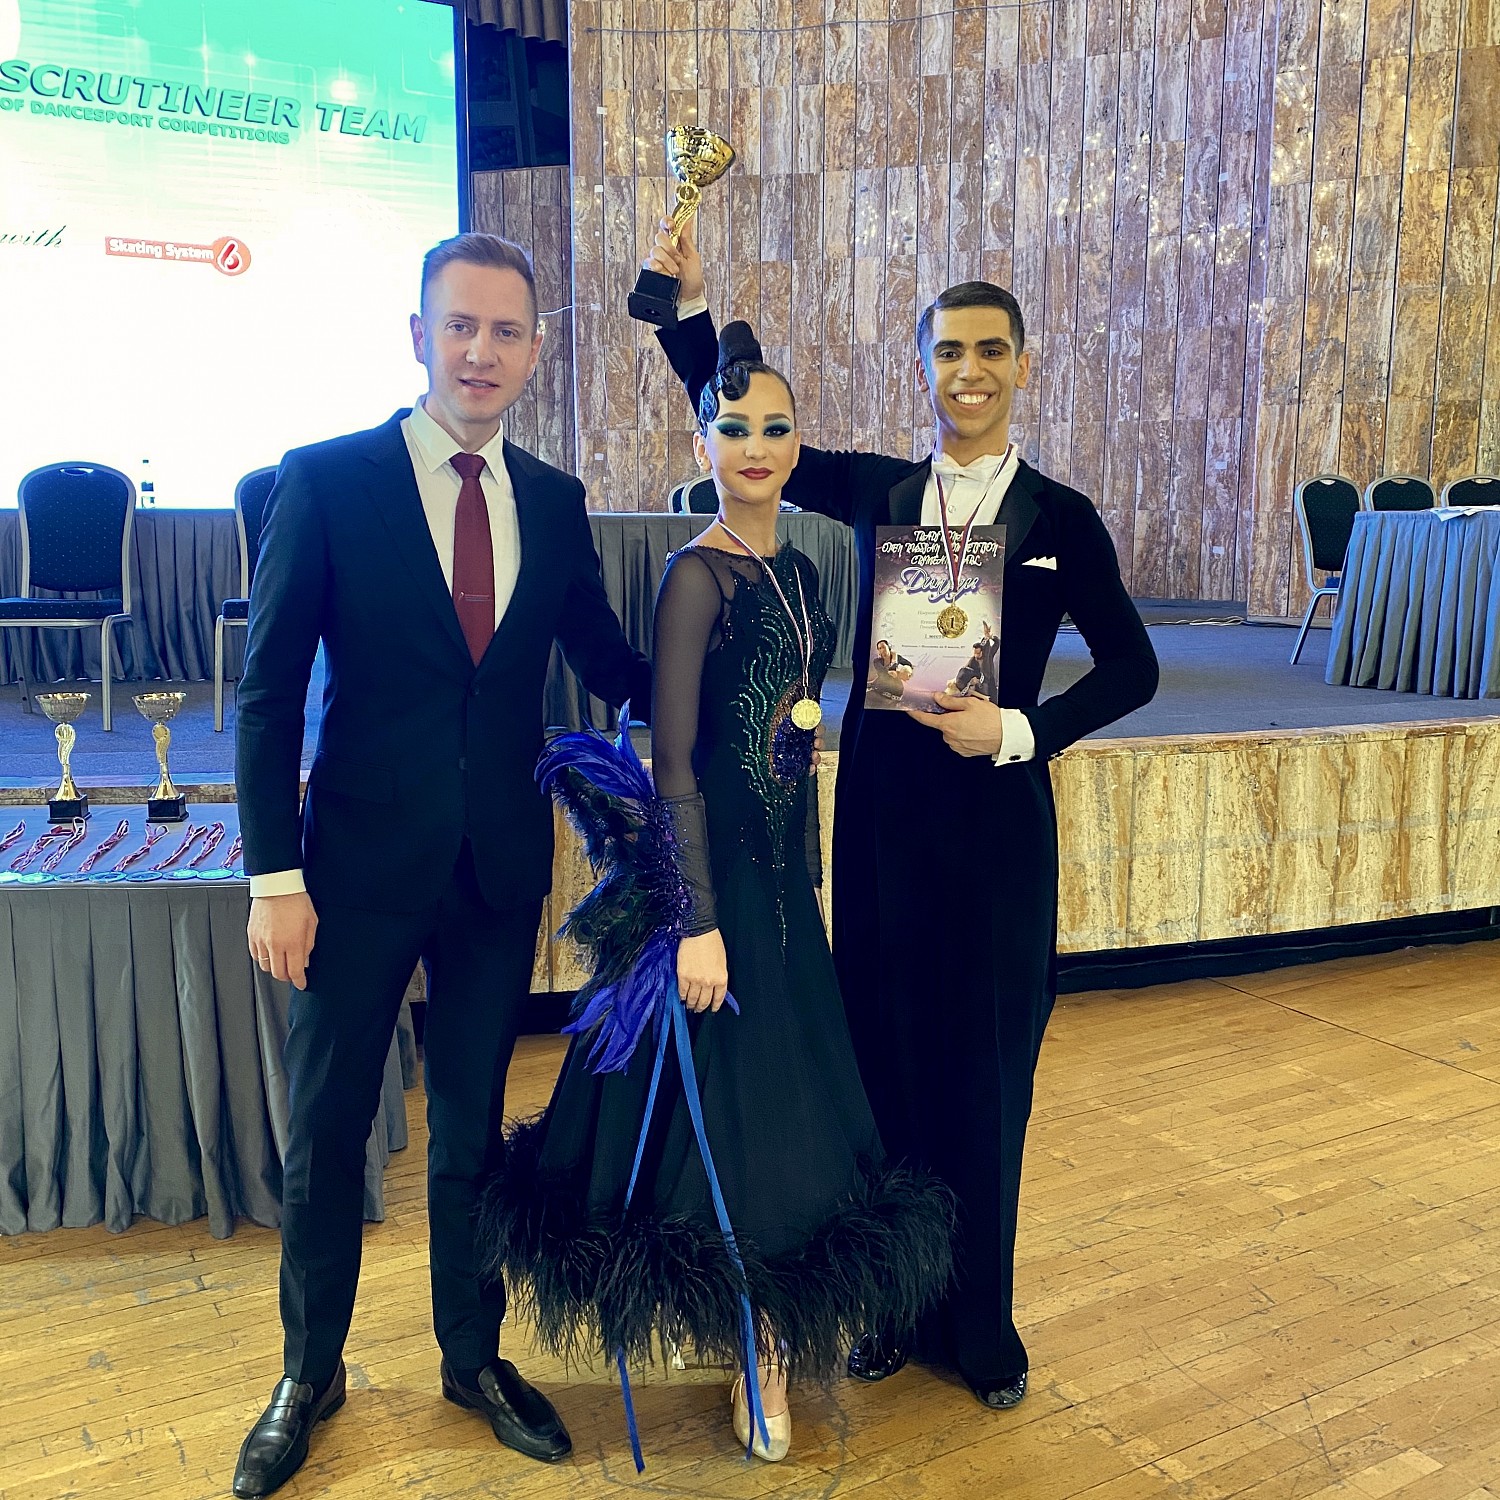 С 1 по 7 декабря спортсмены Ленинского городского округа представляли муниципалитет на Всероссийском танцевальном турнире в Ялте